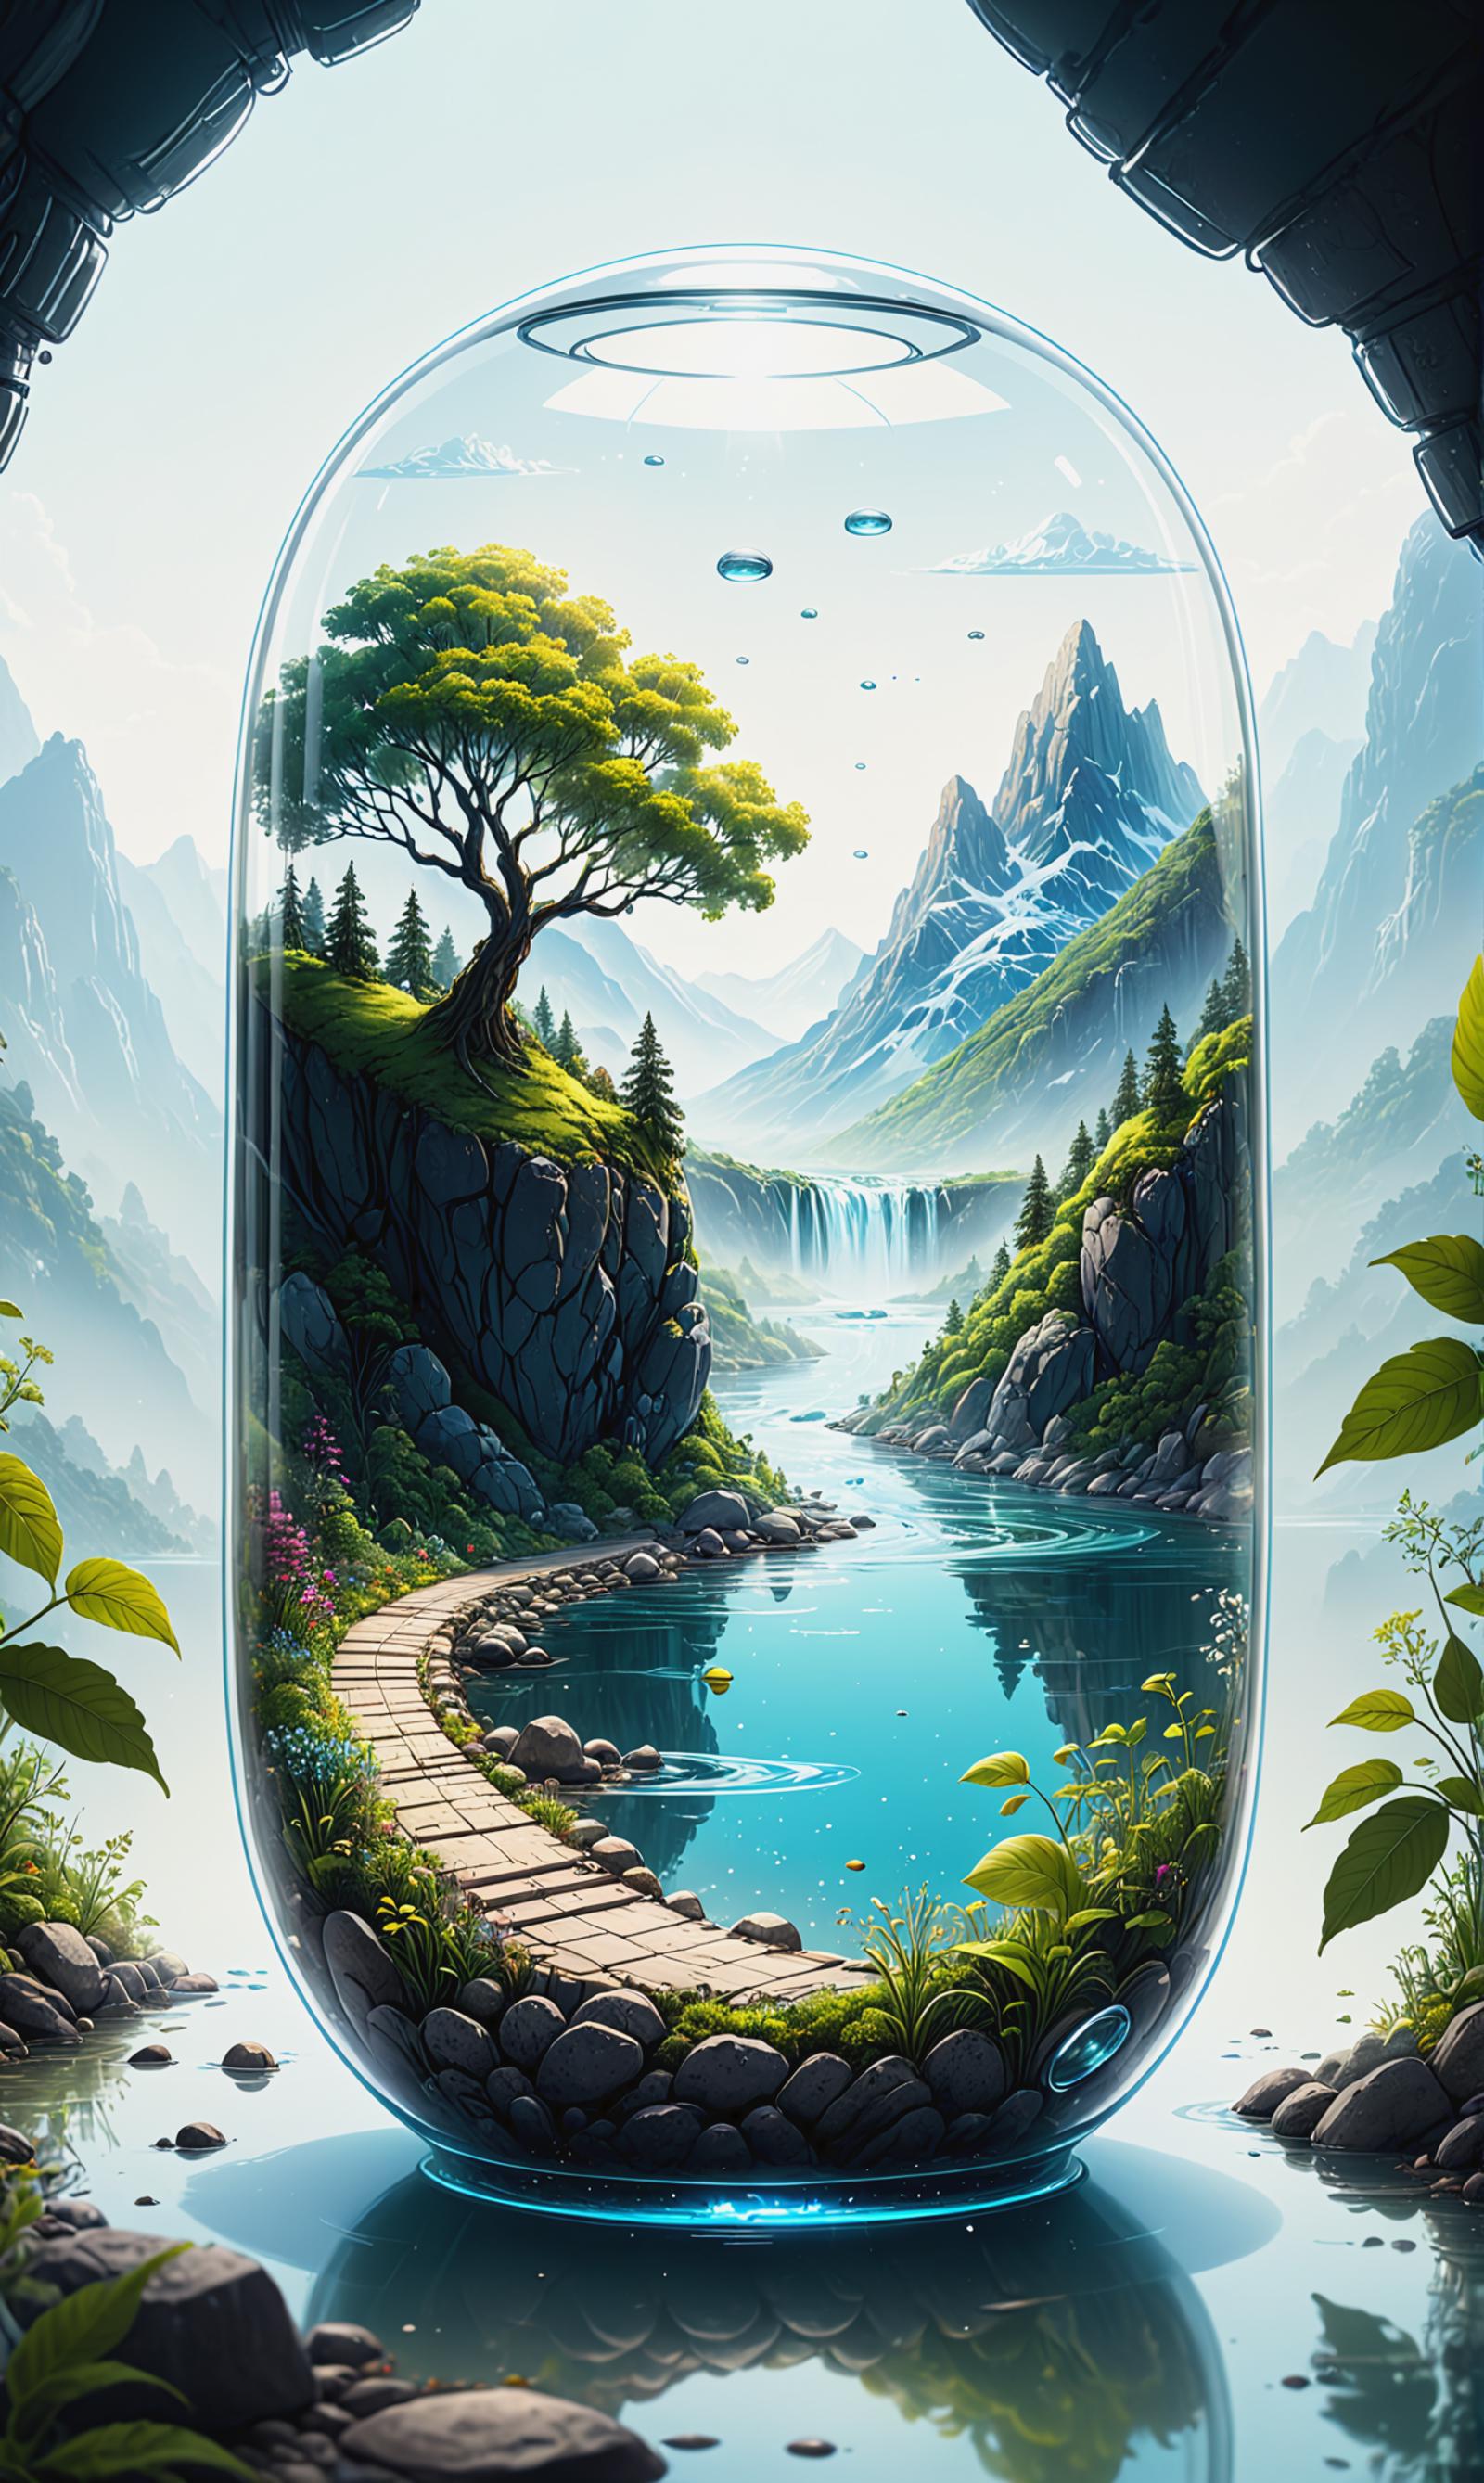 A Vivid Landscape Painting Inside a Glass Bottle